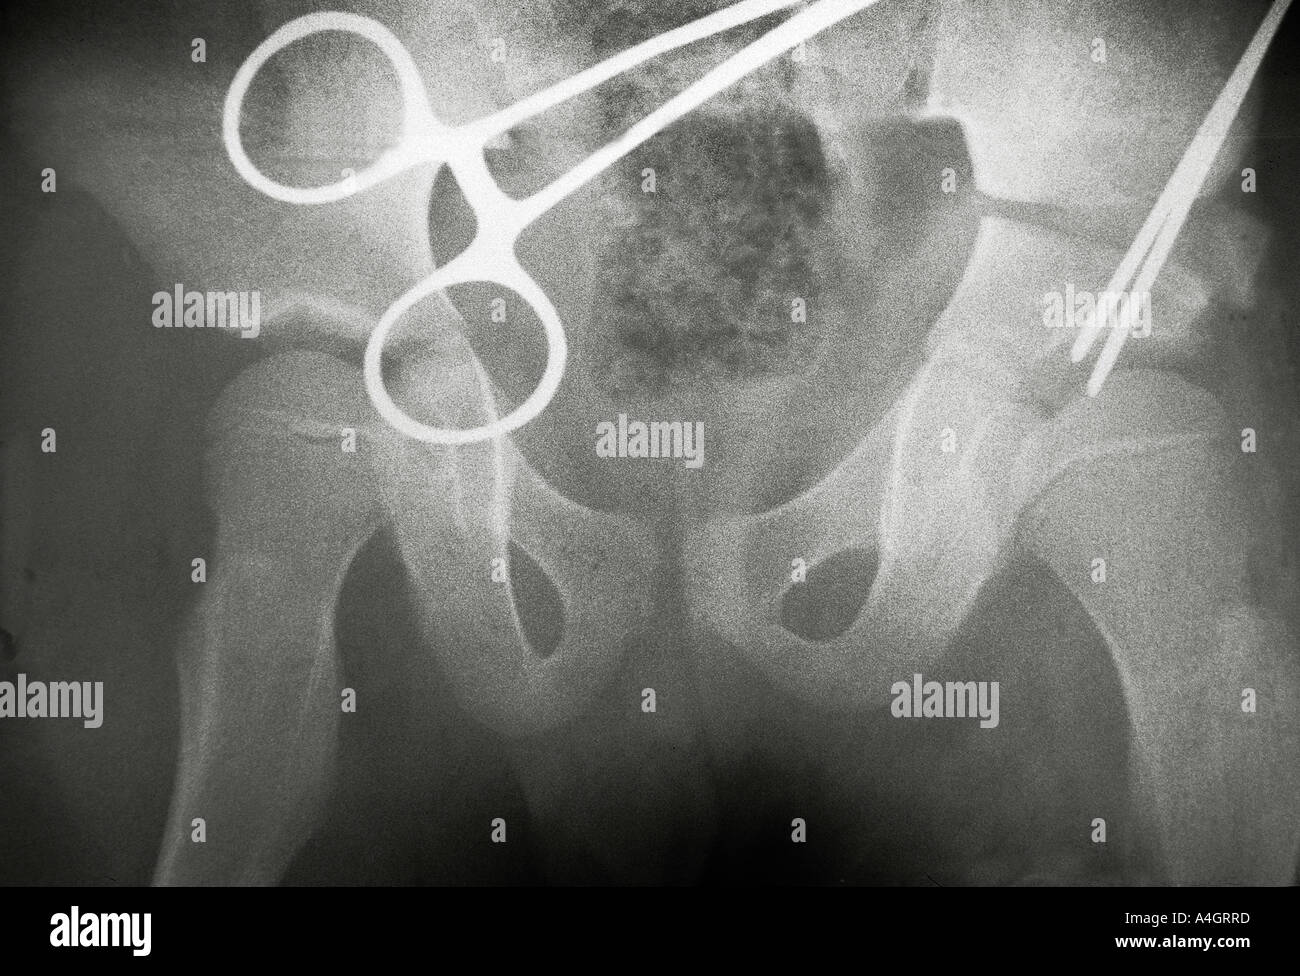 A raggi x che mostra coxa magna, allargamento e la deformazione della testa del femore Foto Stock